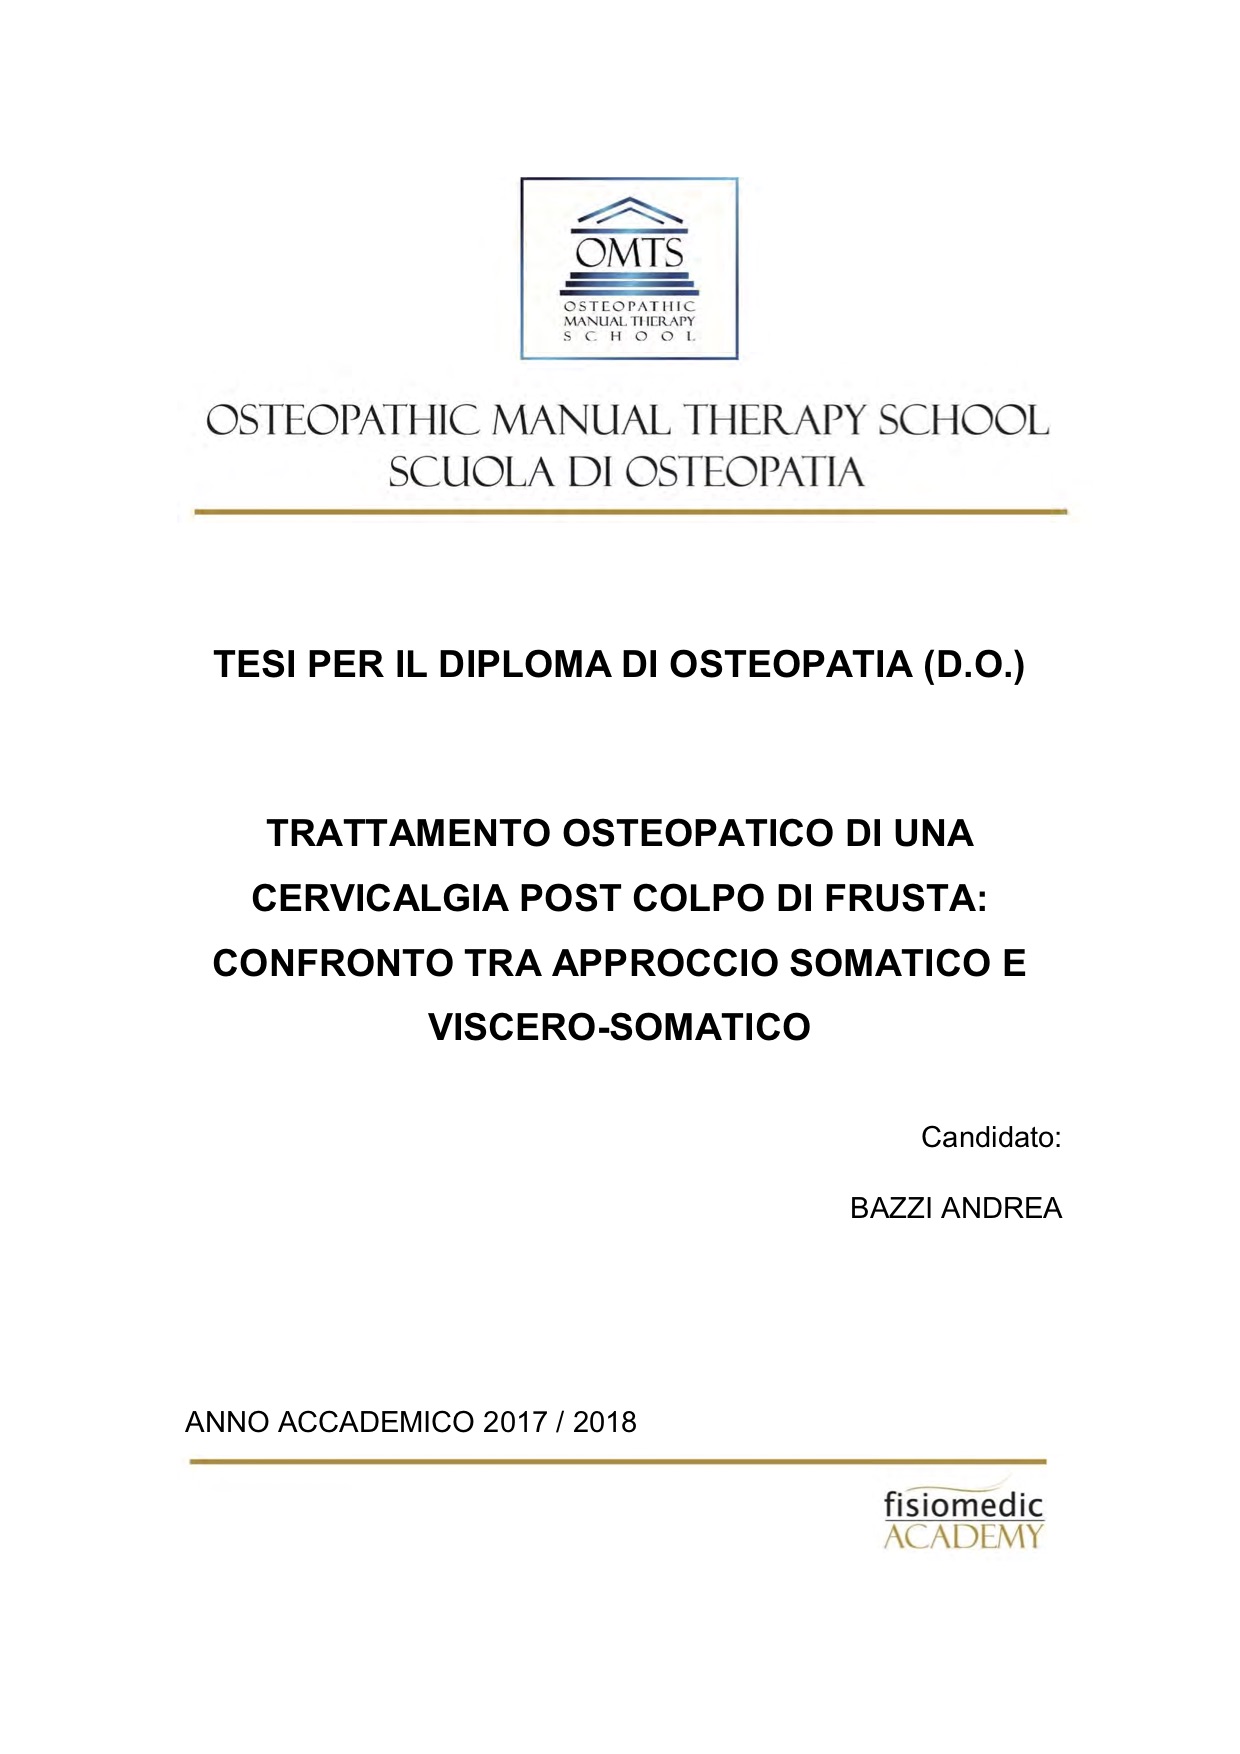 Andrea Bazzi Tesi Diploma Osteopatia 2018